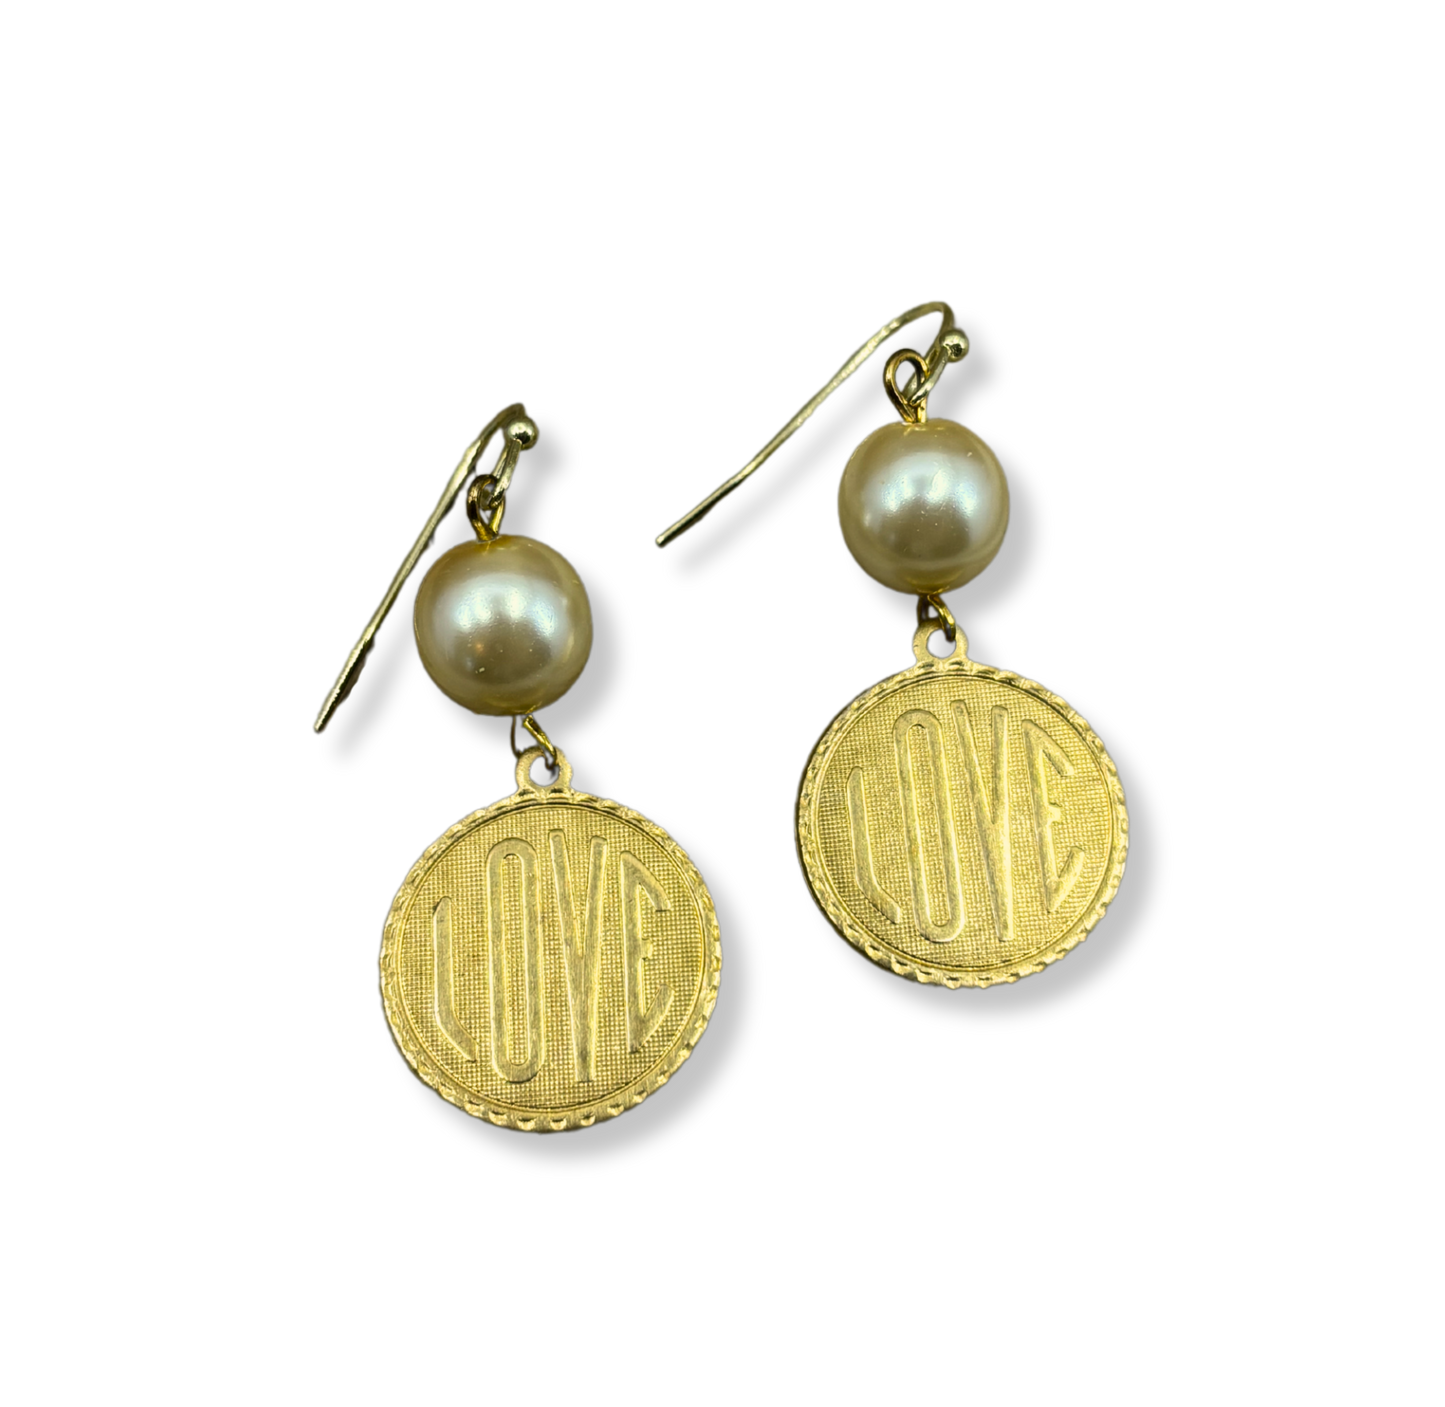 Vintage Gold & Pearl "Love" Earrings